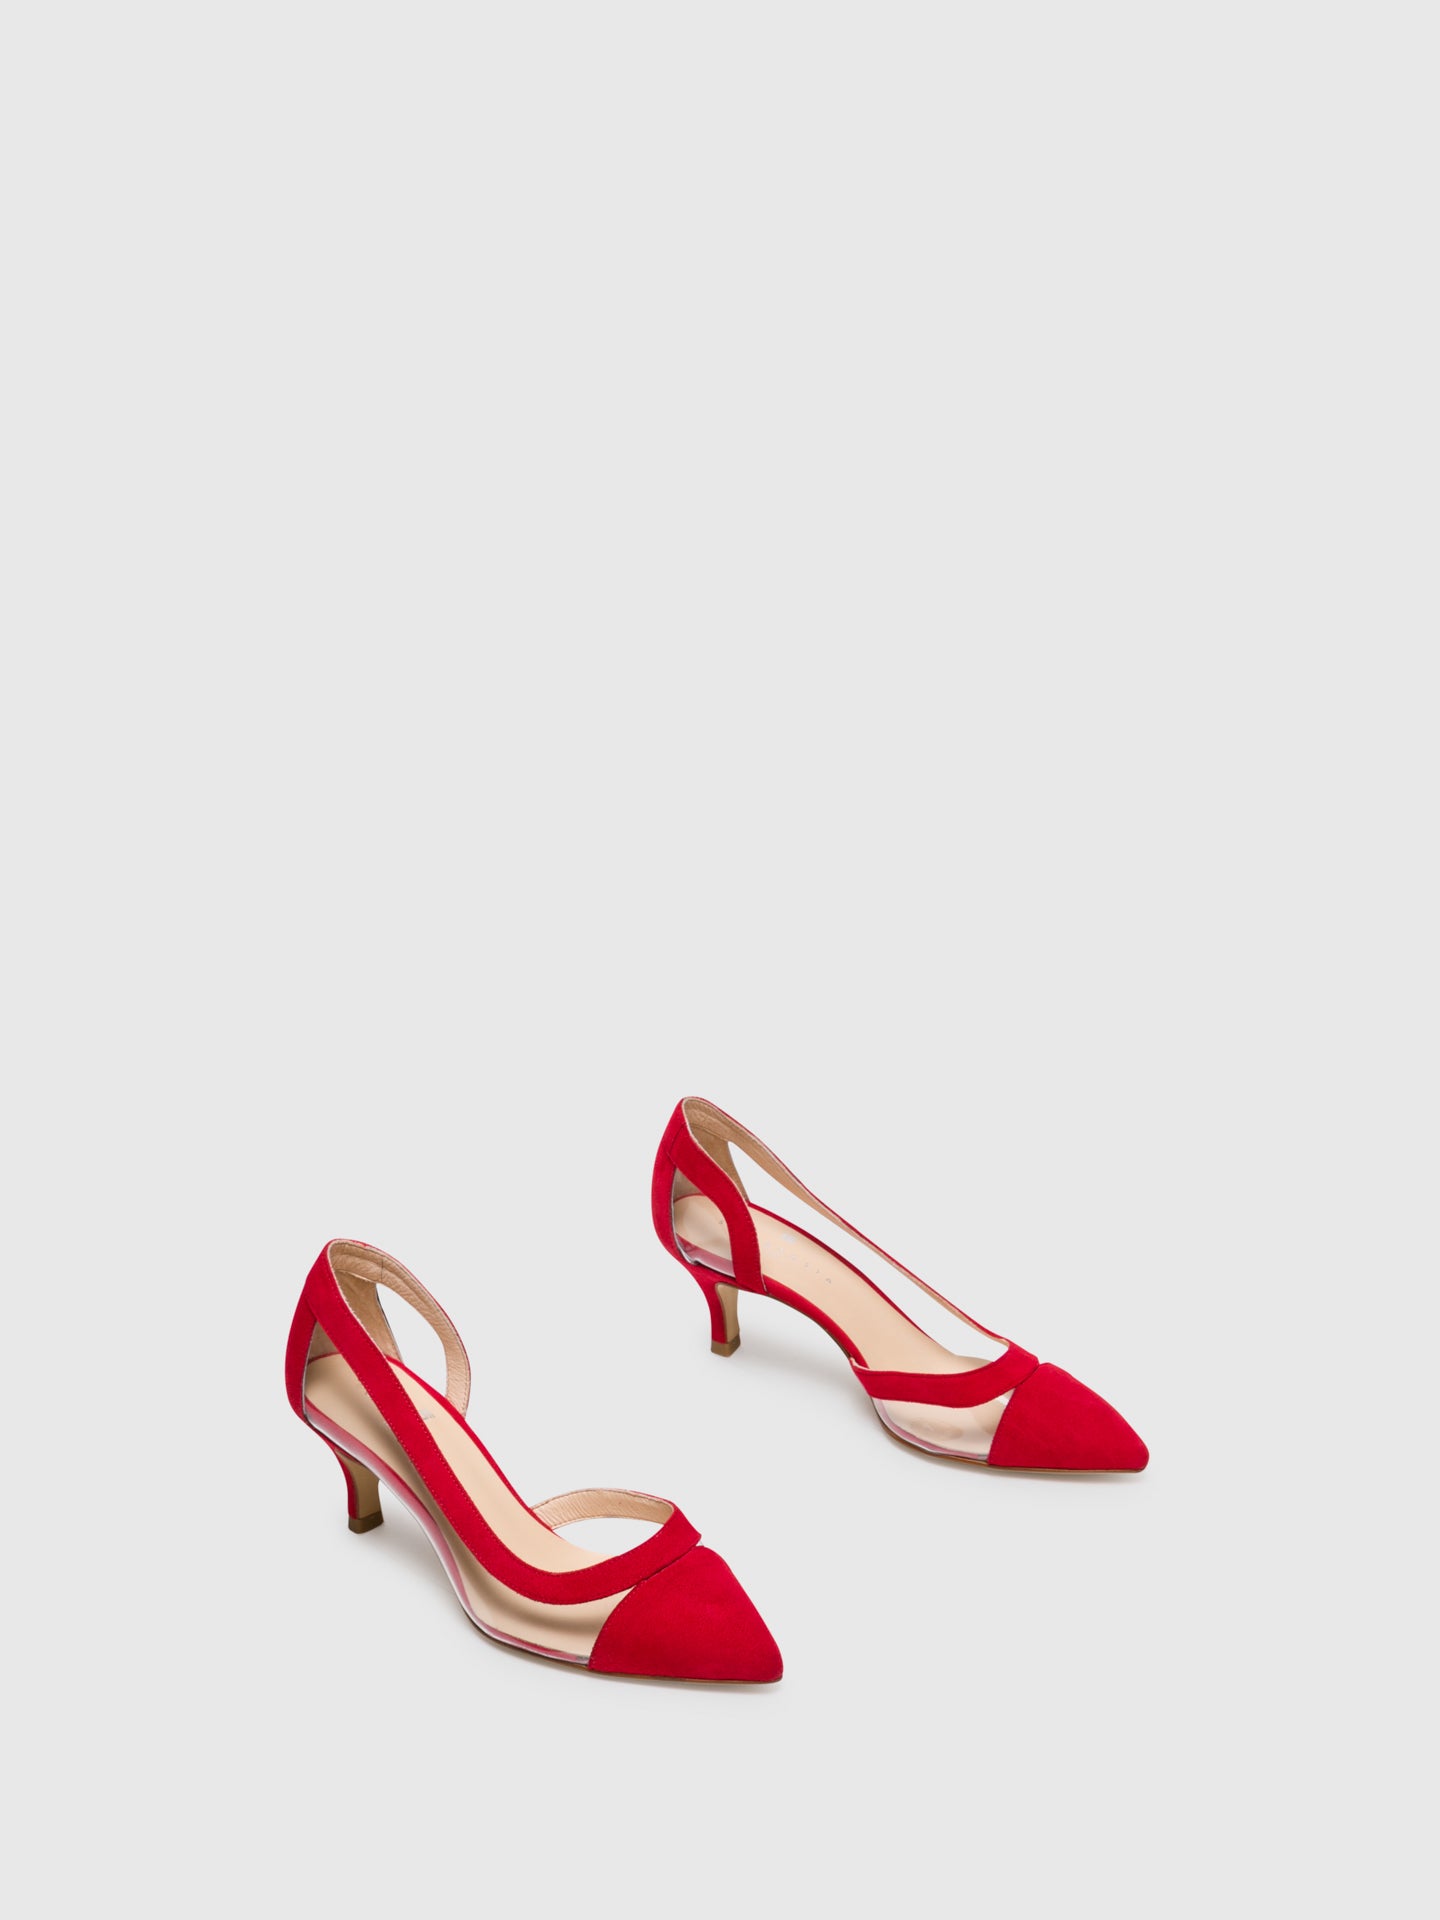 Sofia Costa Red Stilettos Shoes